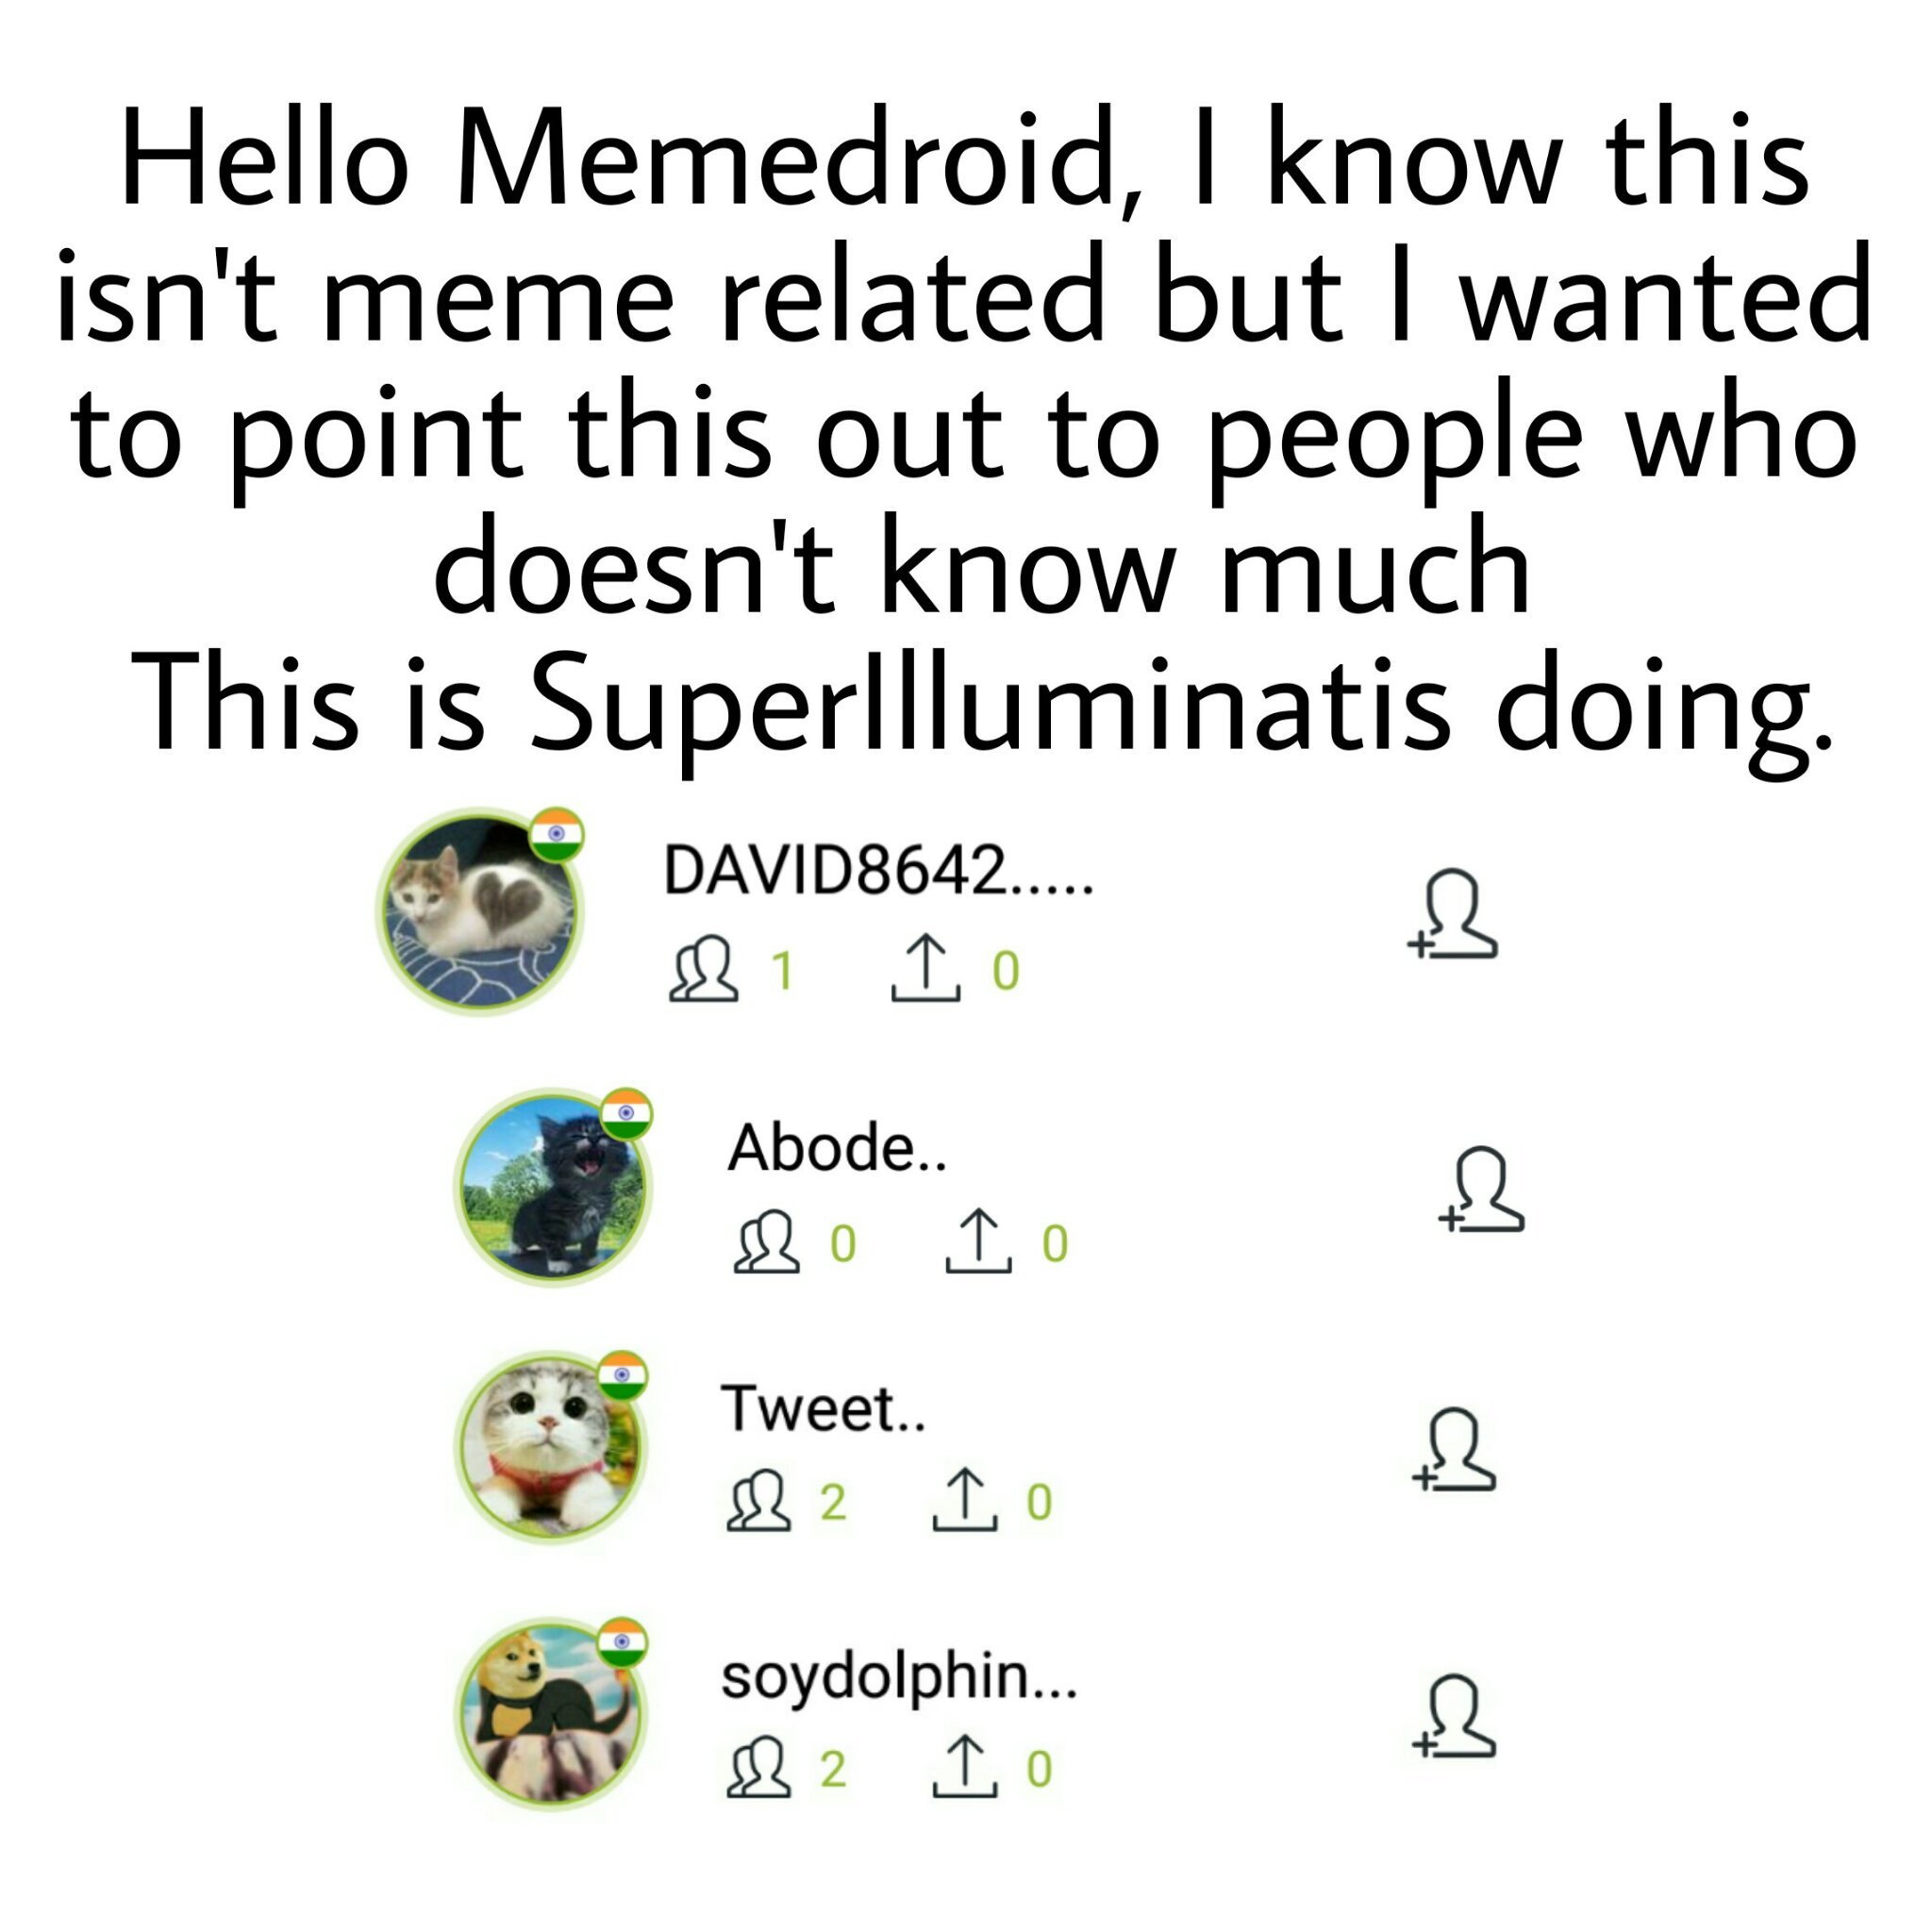 Upvote if you agree if SuperIlluminati should be exterminated - meme